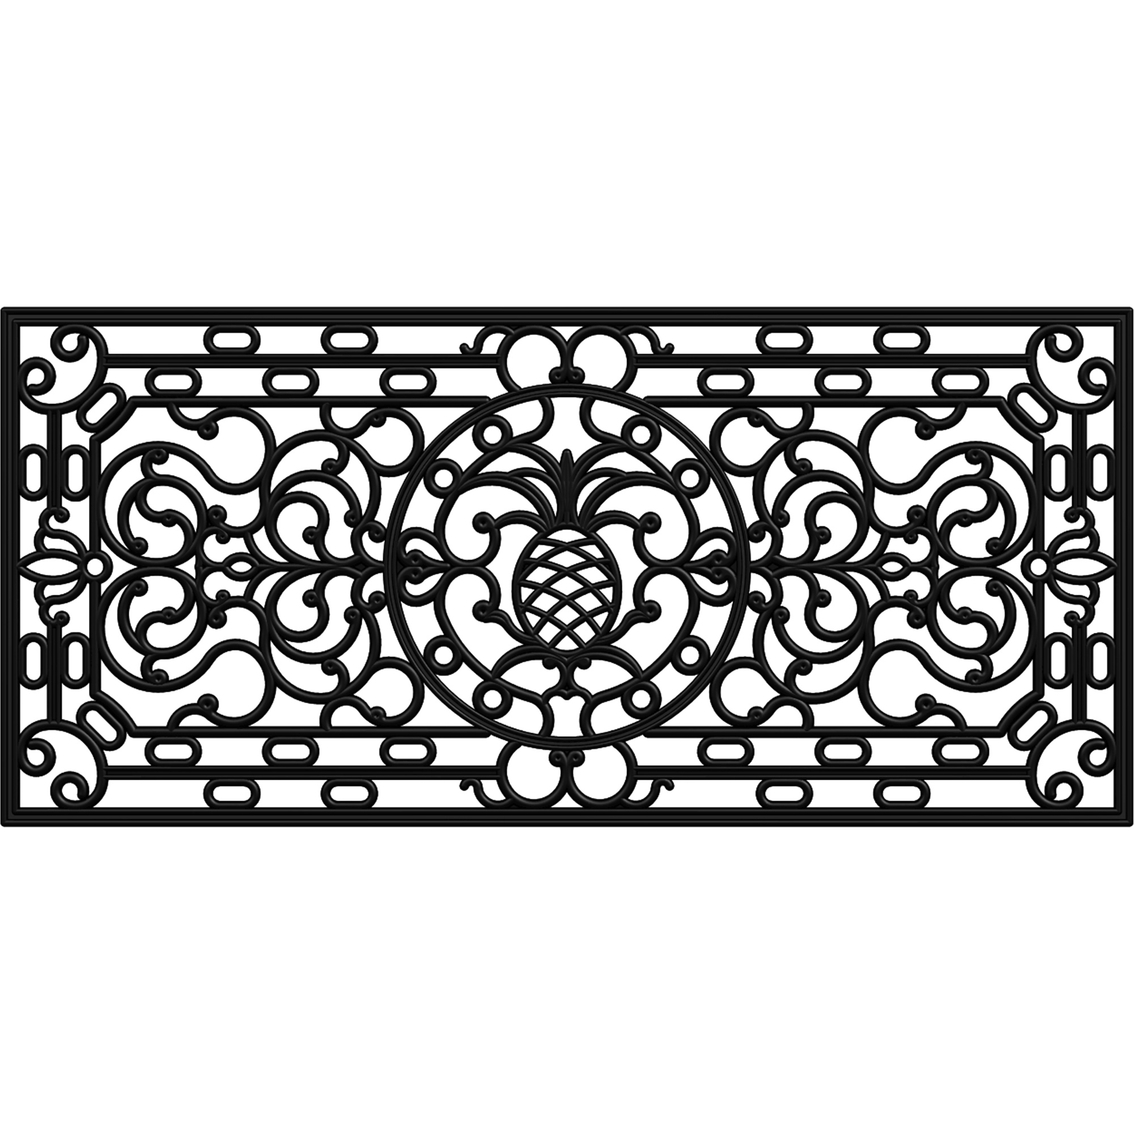 Calloway Mills Pineapple Heritage Rubber Doormat 18 x 30 in. - Image 3 of 3